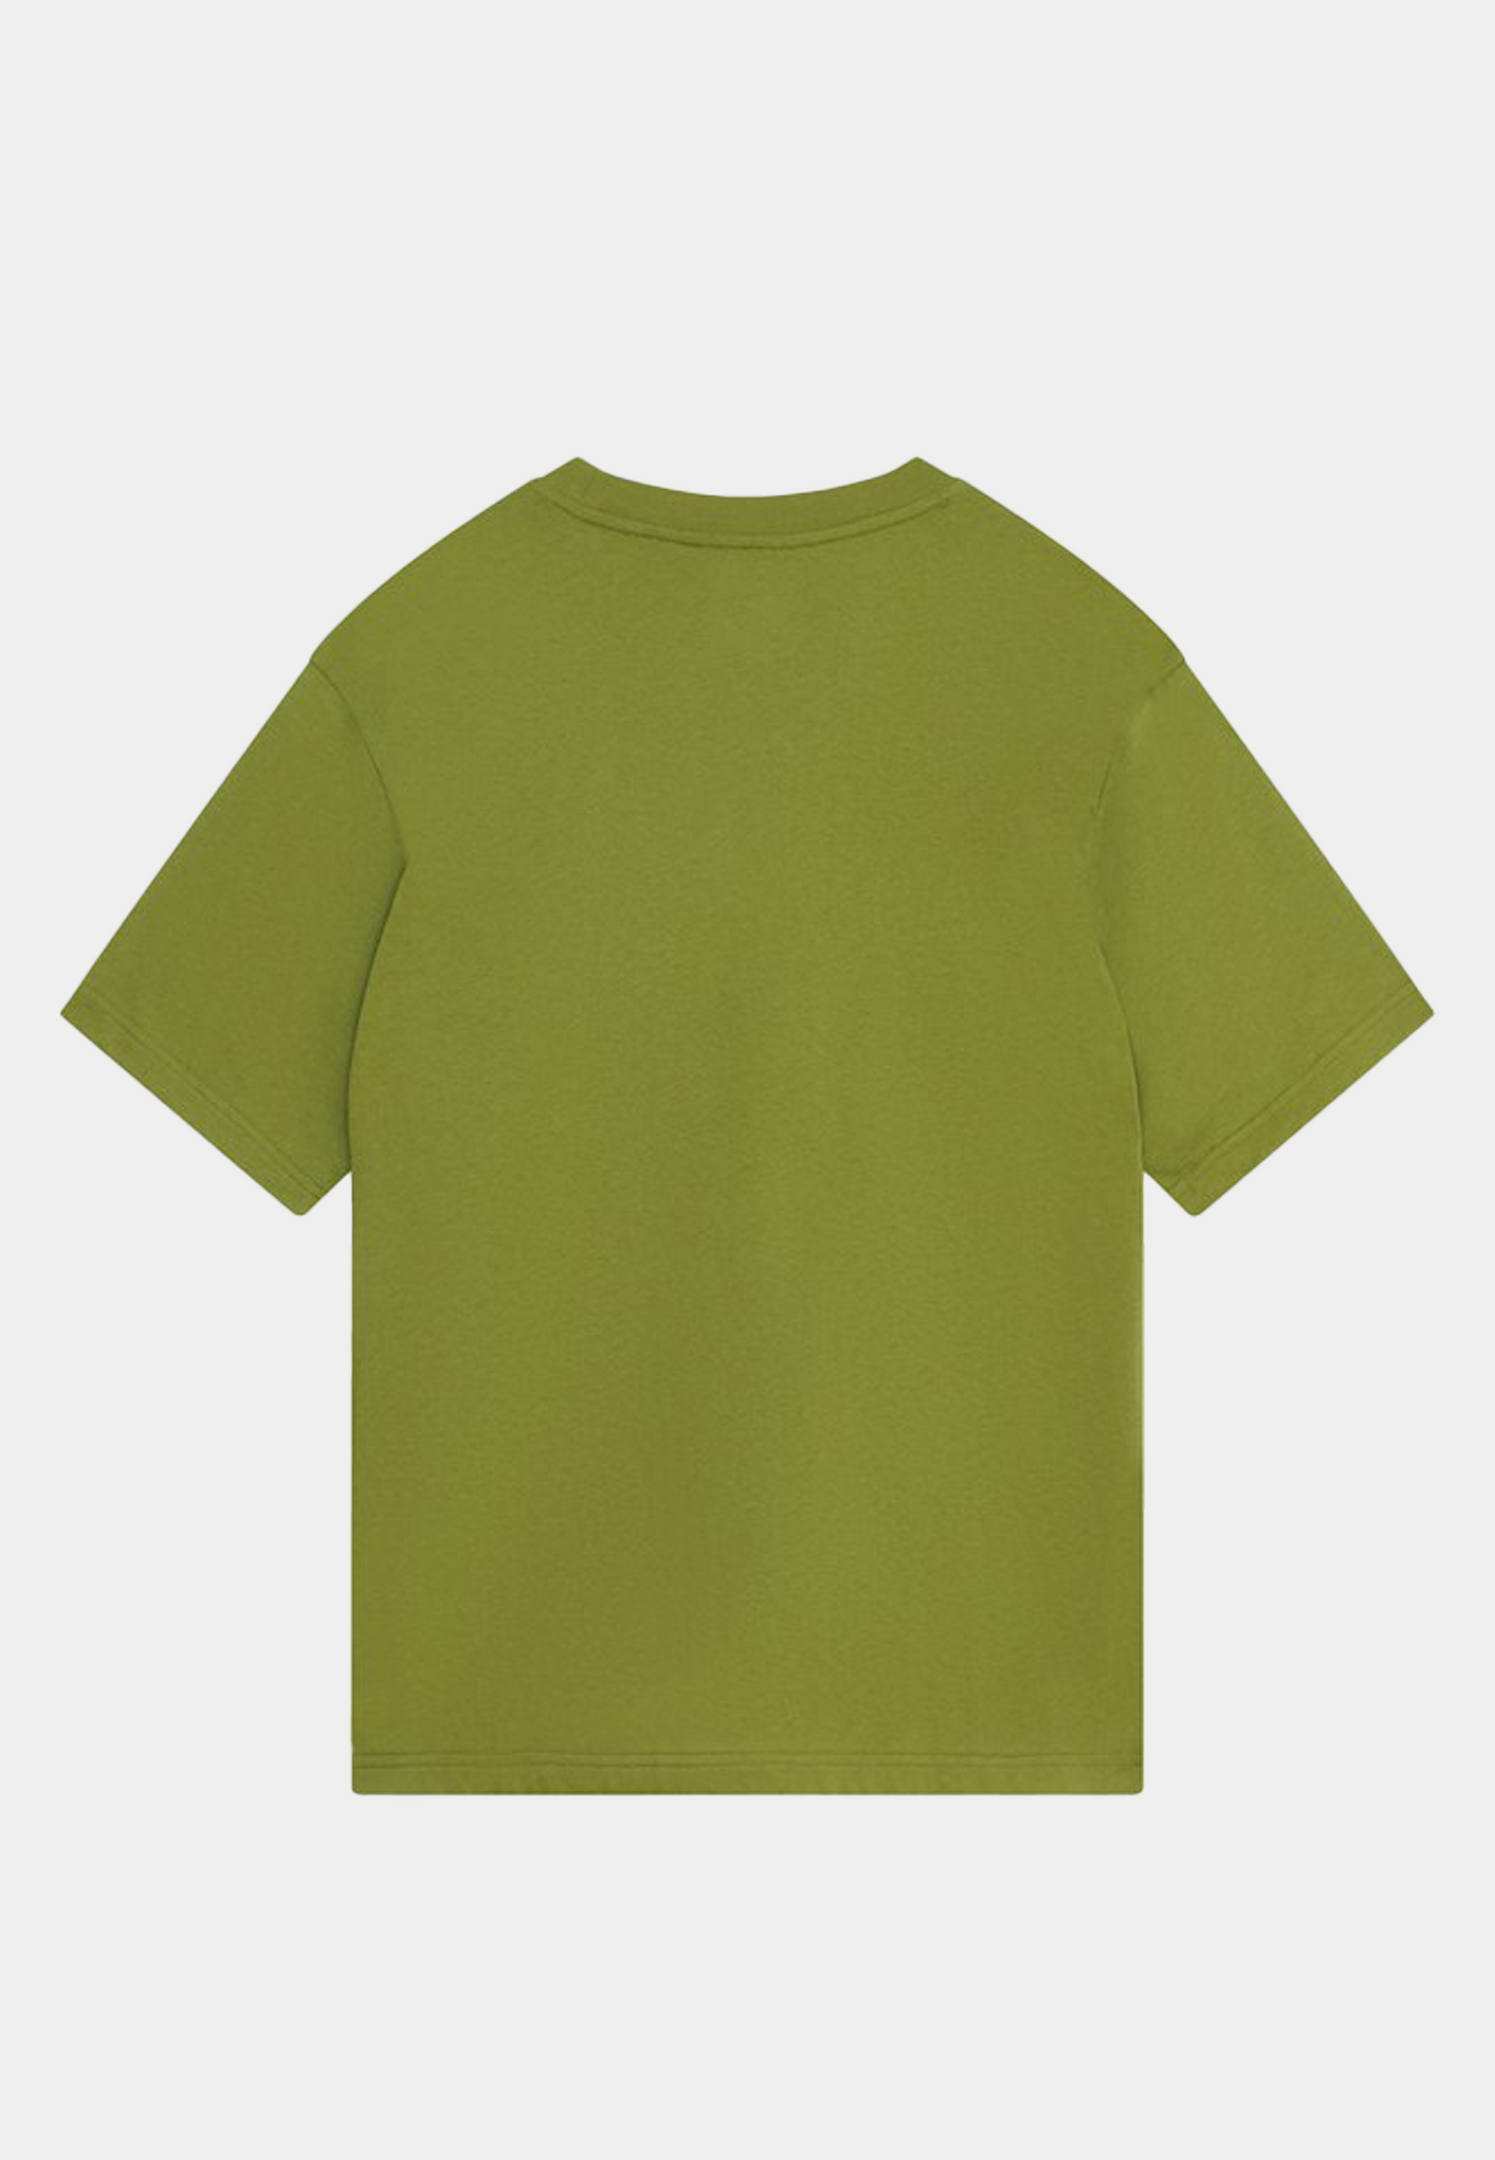 Wood Wood Asa Spray Paint T-shirt - Fatique green